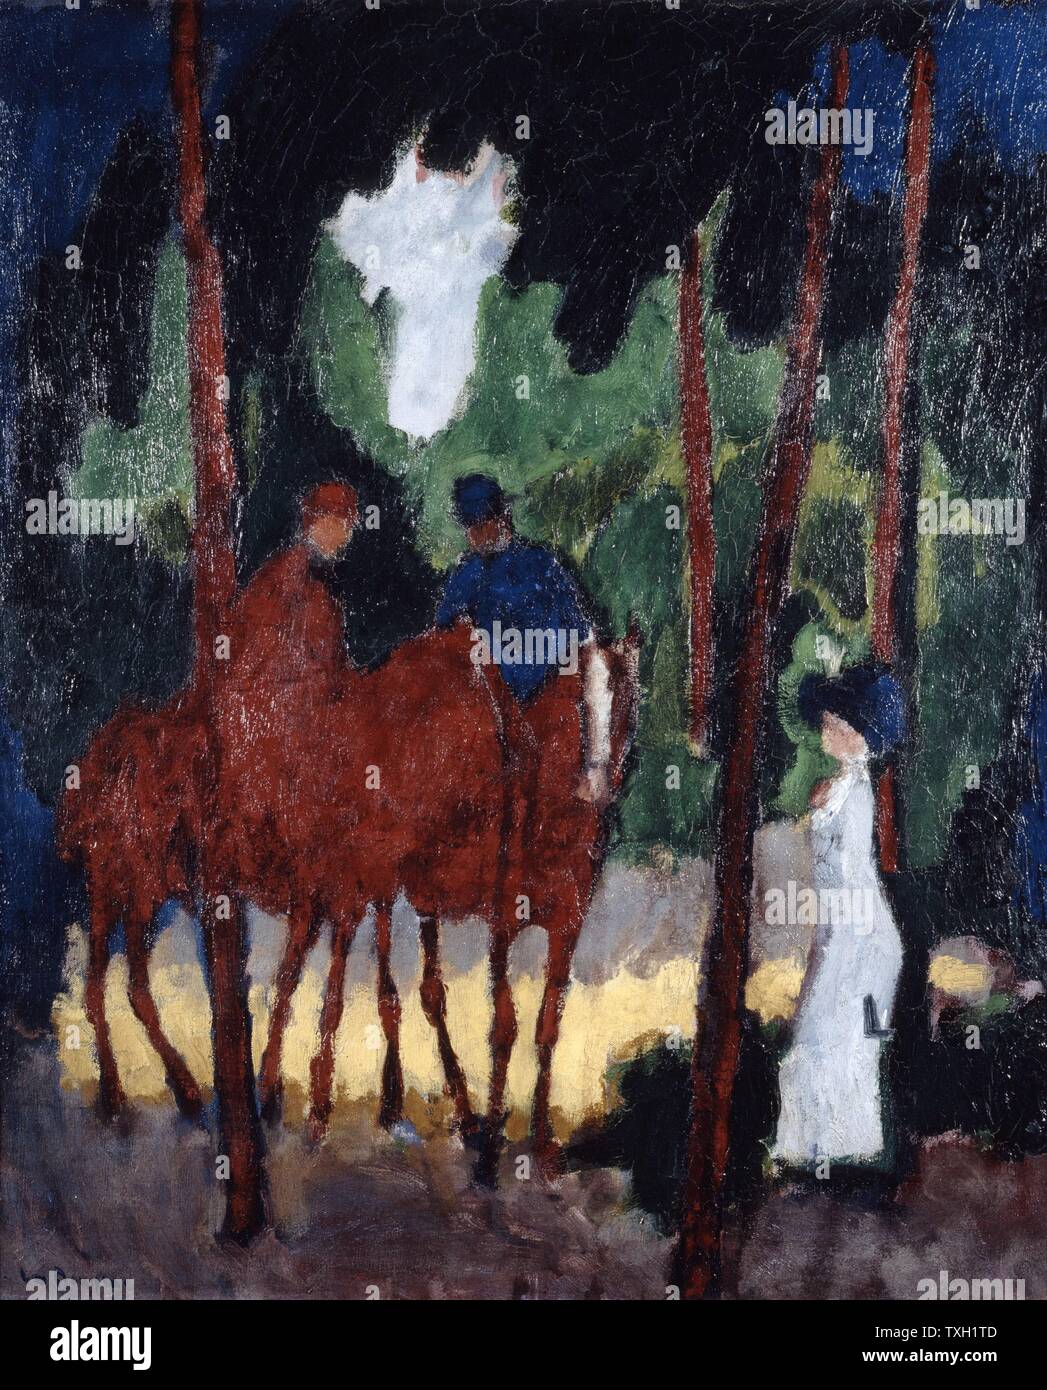 L'école Néerlandaise Kees Van Dongen cavaliers dans le Bois de Boulogne, c.1908-1909 Huile sur toile (64 x 53,2 cm) Le Havre, Musée des Beaux-Arts André Malraux Banque D'Images